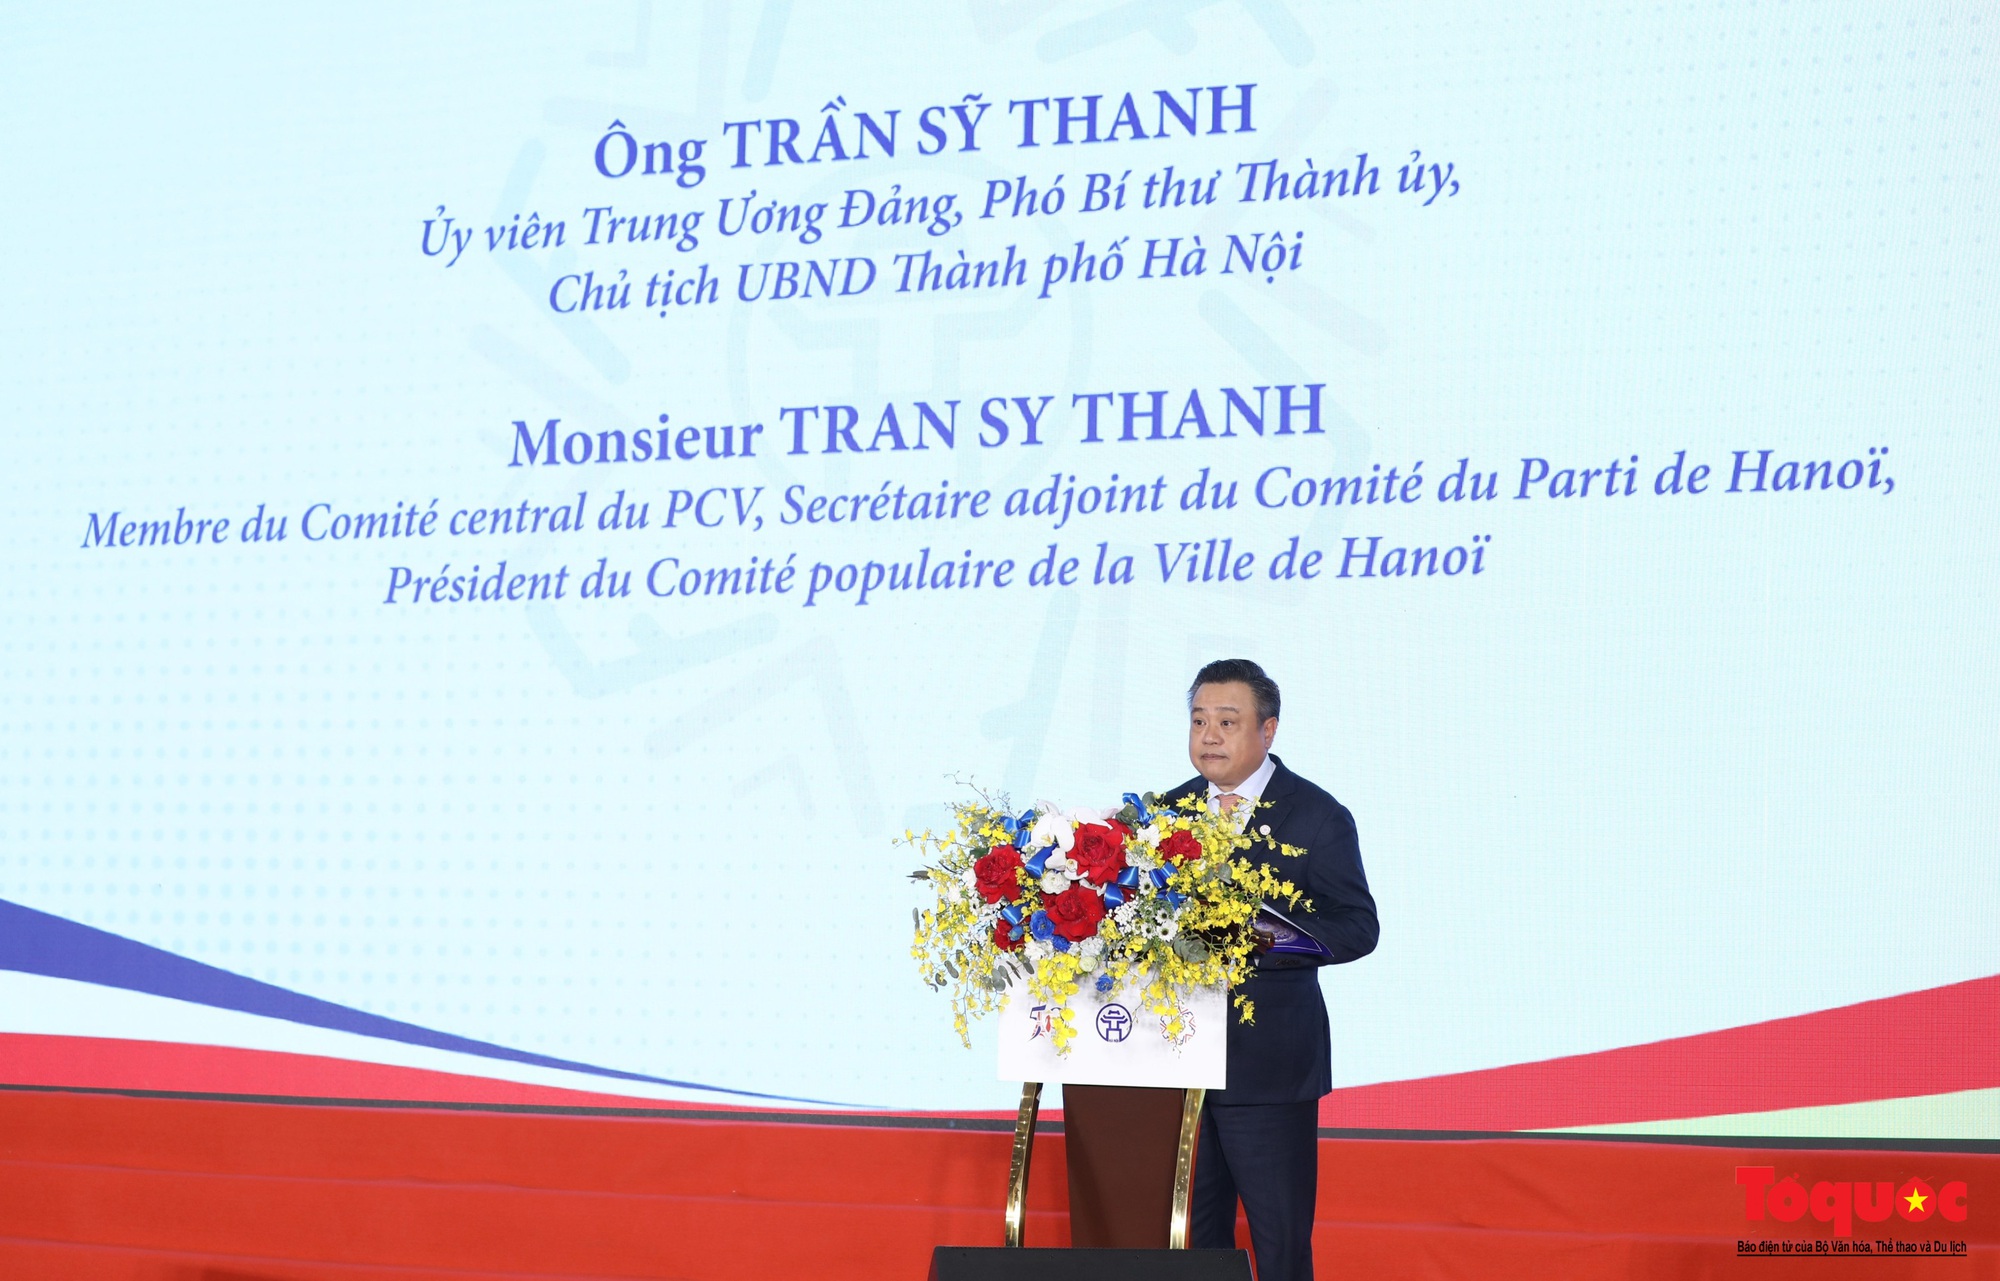 Chùm ảnh: Khai mạc Hội nghị hợp tác giữa các địa phương Việt Nam và Pháp lần thứ 12 - Ảnh 5.